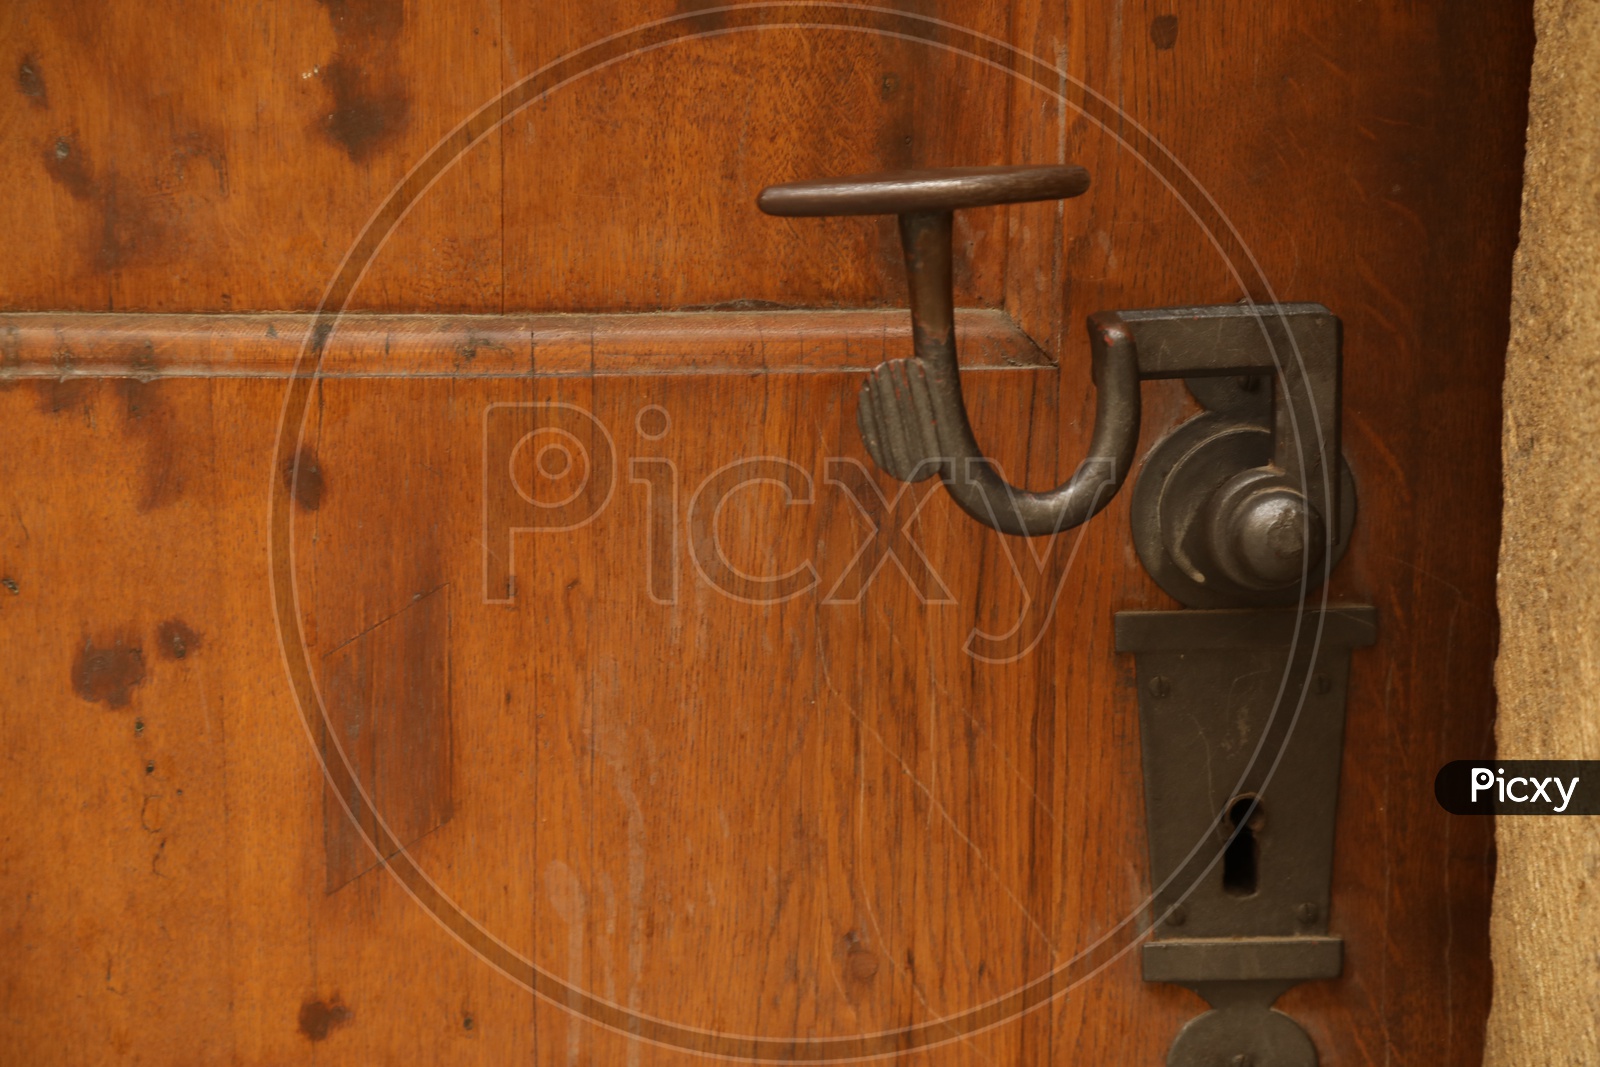 Metal handle on the wooden door